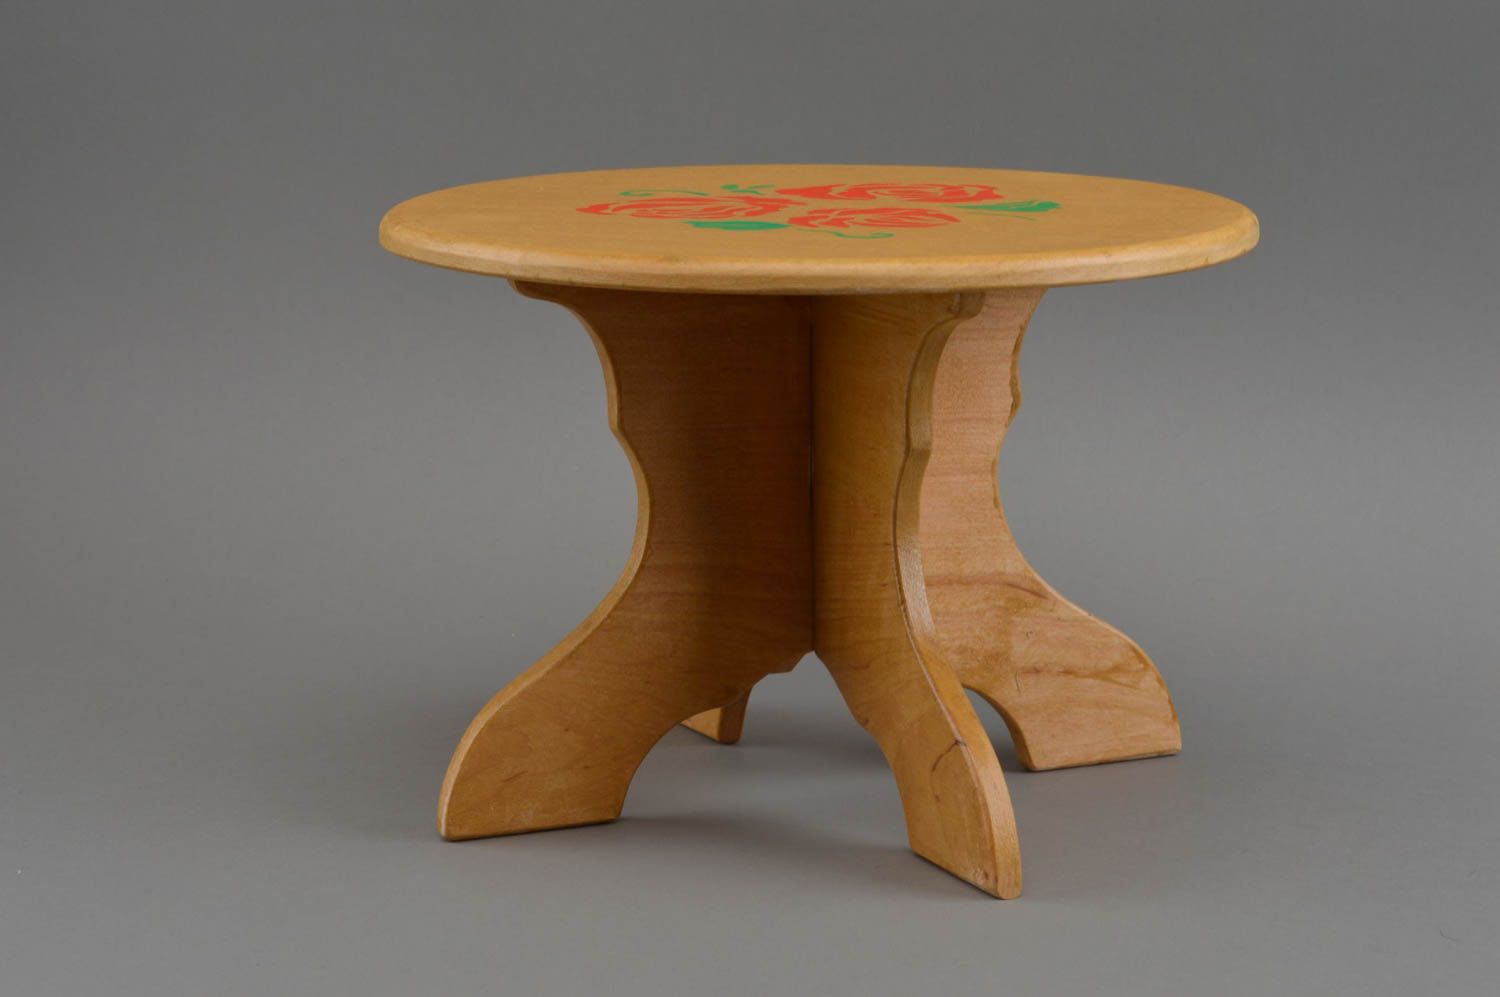 Кукольный стол из дерева круглый декоративный оригинальный ручной работы фото 4